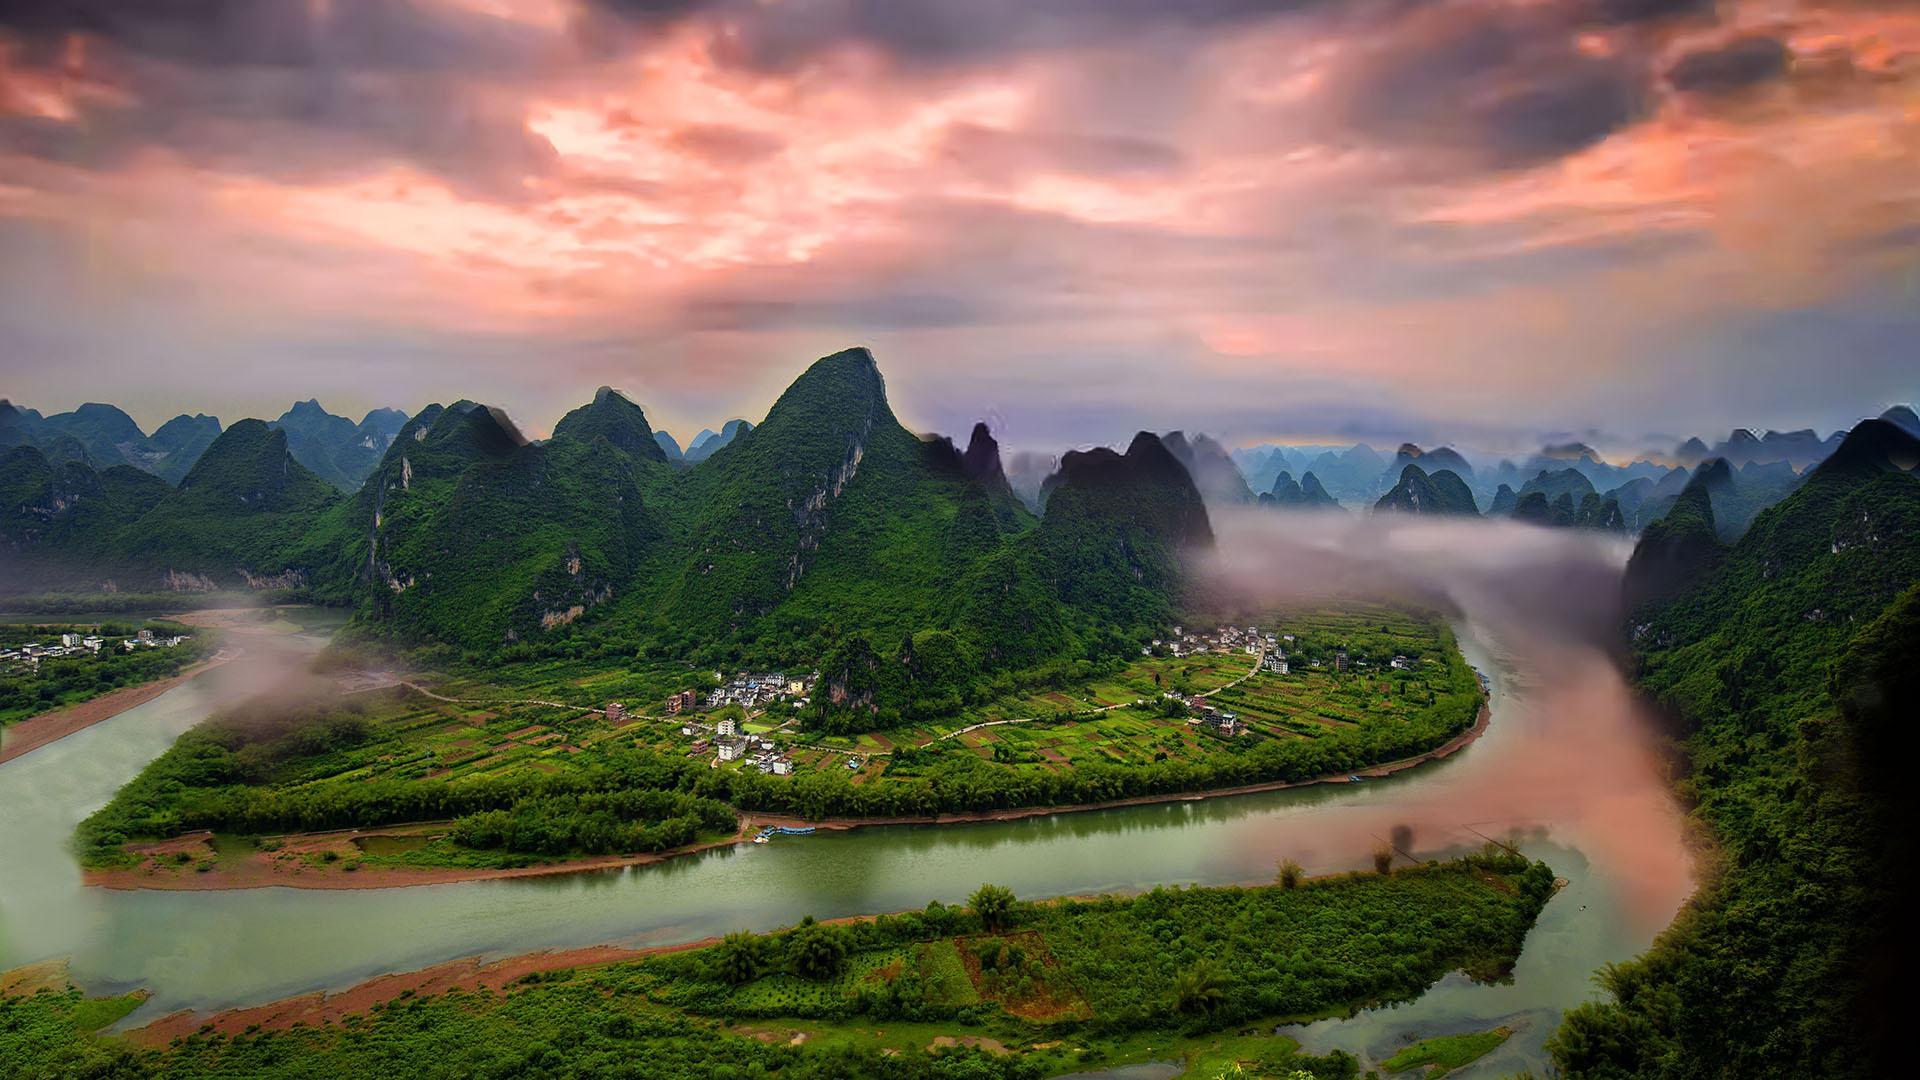 桂林市漓江景区位于广西壮族自治区东部,是世界上规模最大,风景最美的